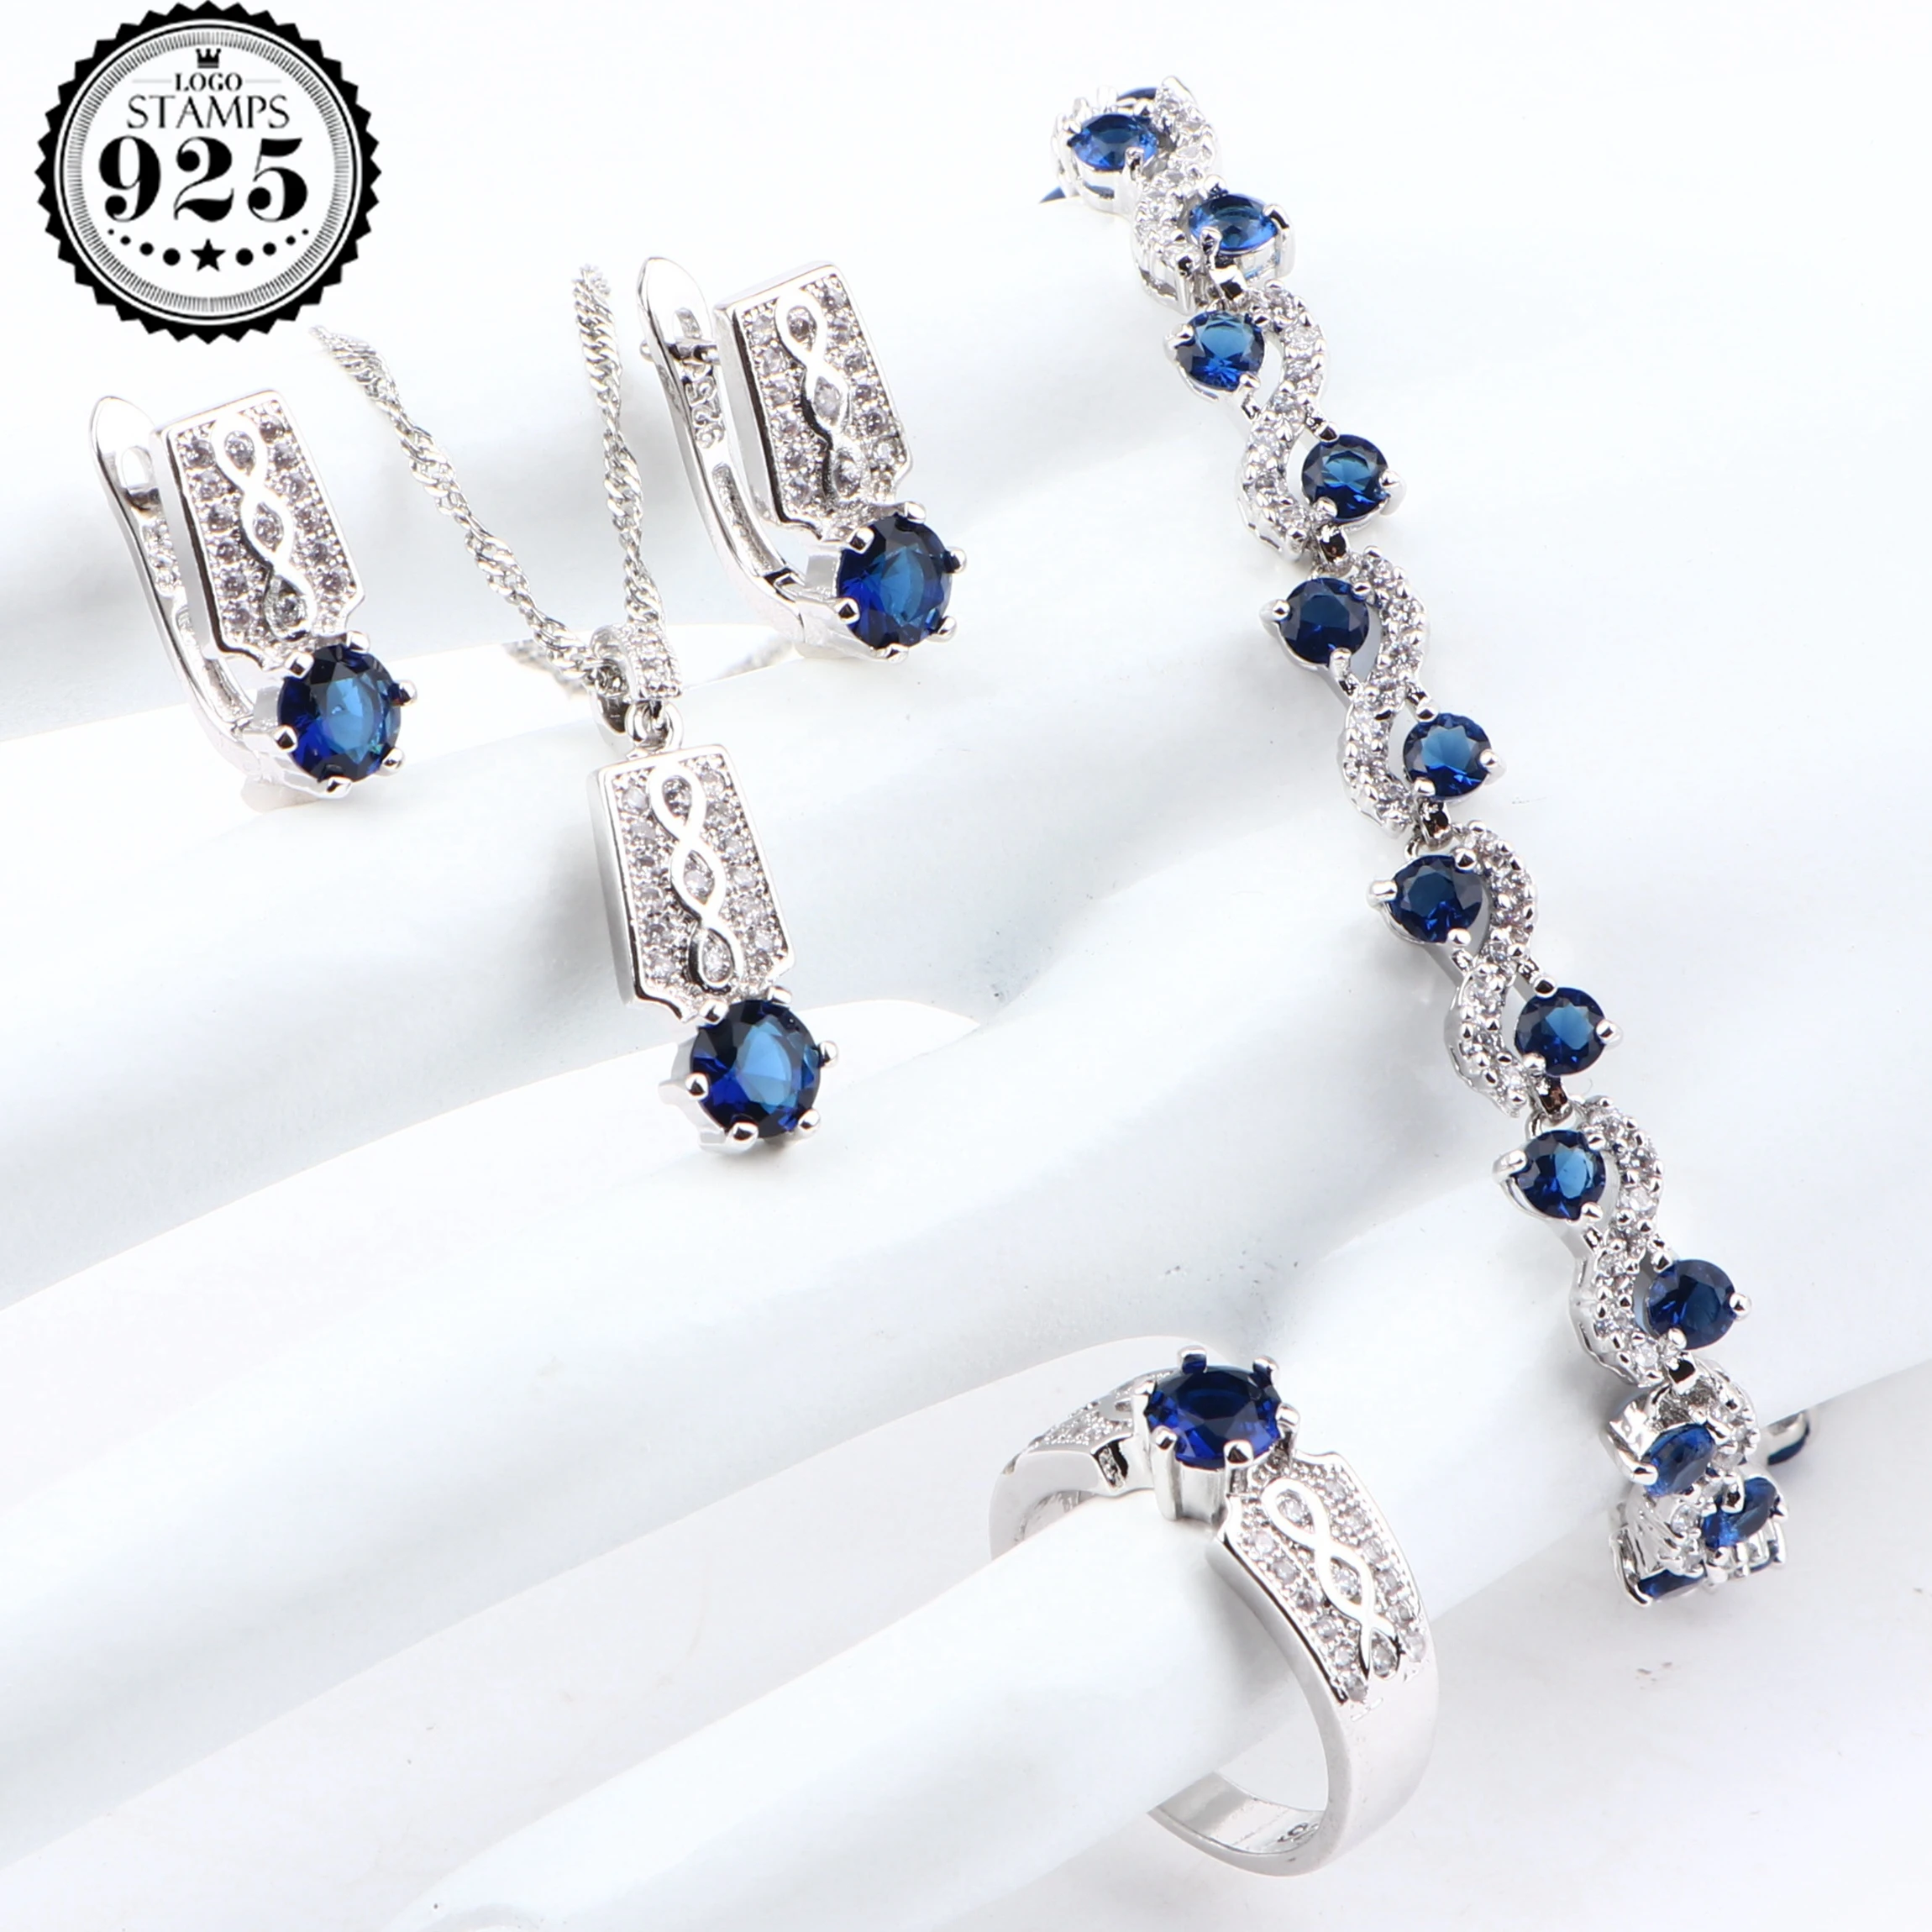 Blue Zirconia Silver 925 Bridal Jewelry Sets For Women Luxury Wedding Costume Jewelry Pendants Bracelets Rings Earrings Necklace